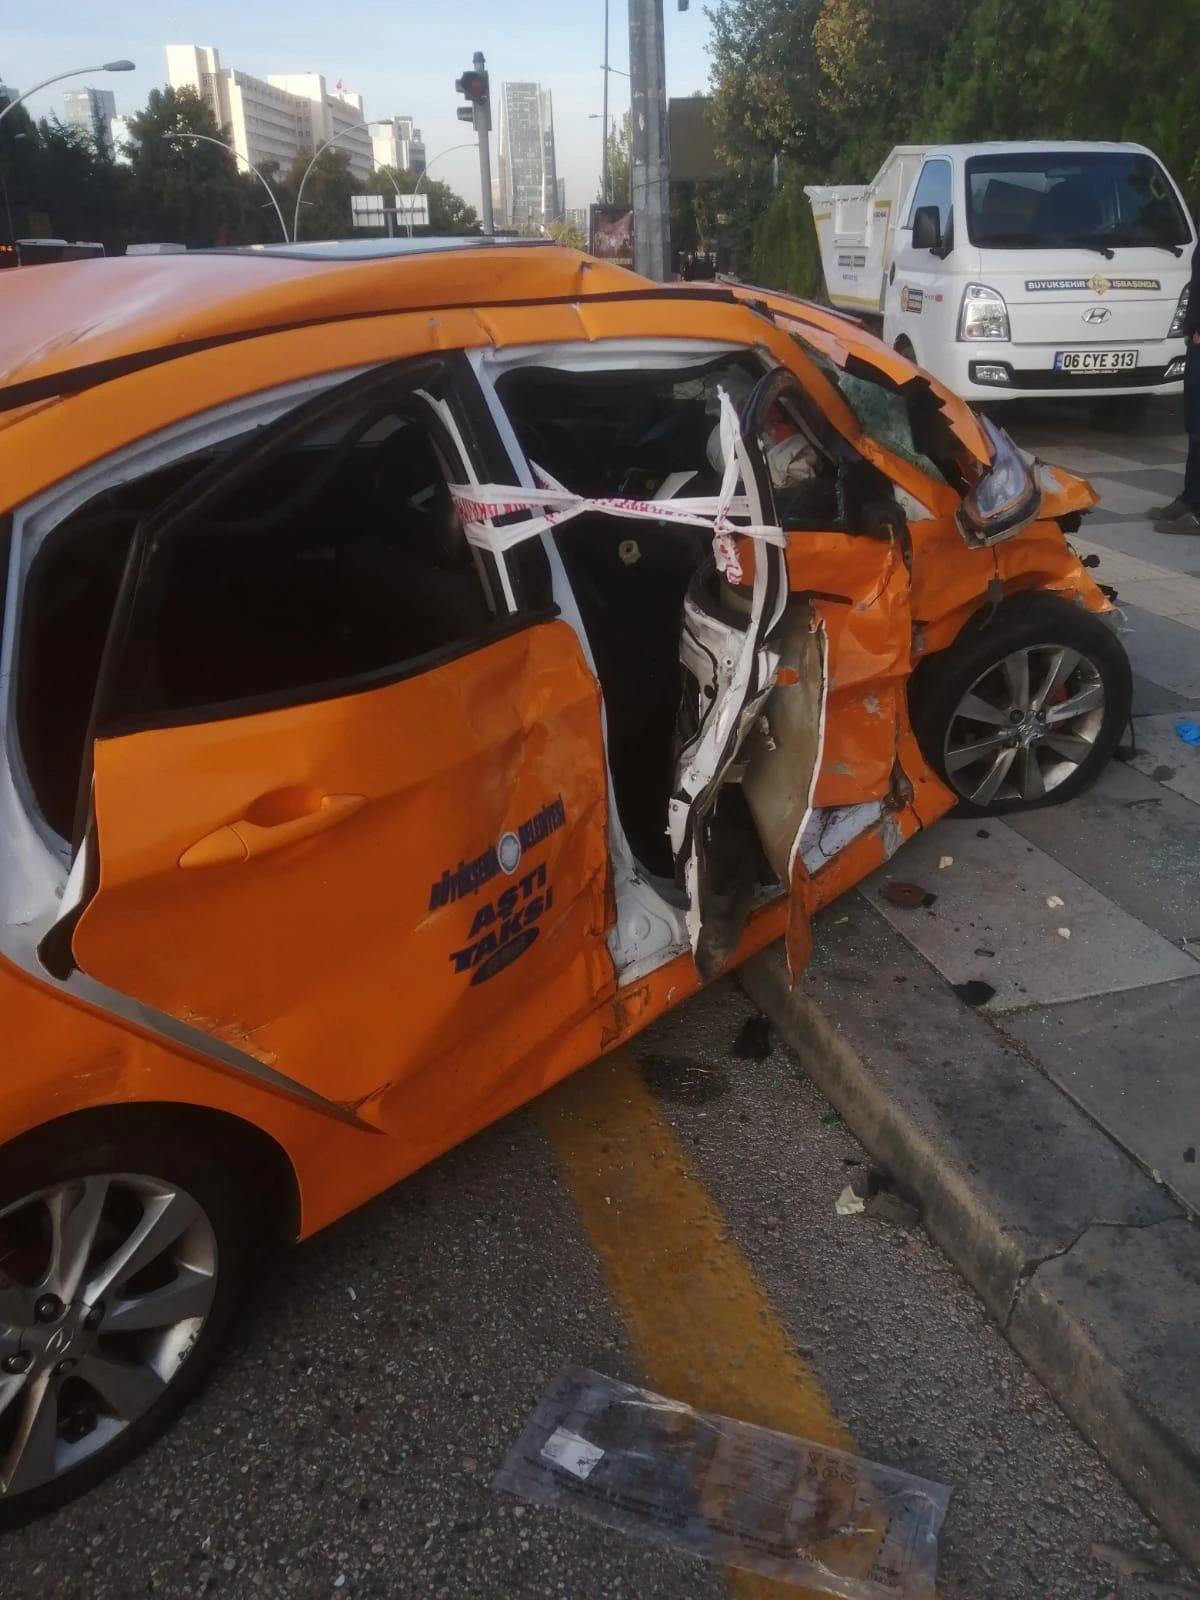 HDP milletvekillerini taşıyan minibüs ile çarpışan taksinin şoförü hayatını kaybetti